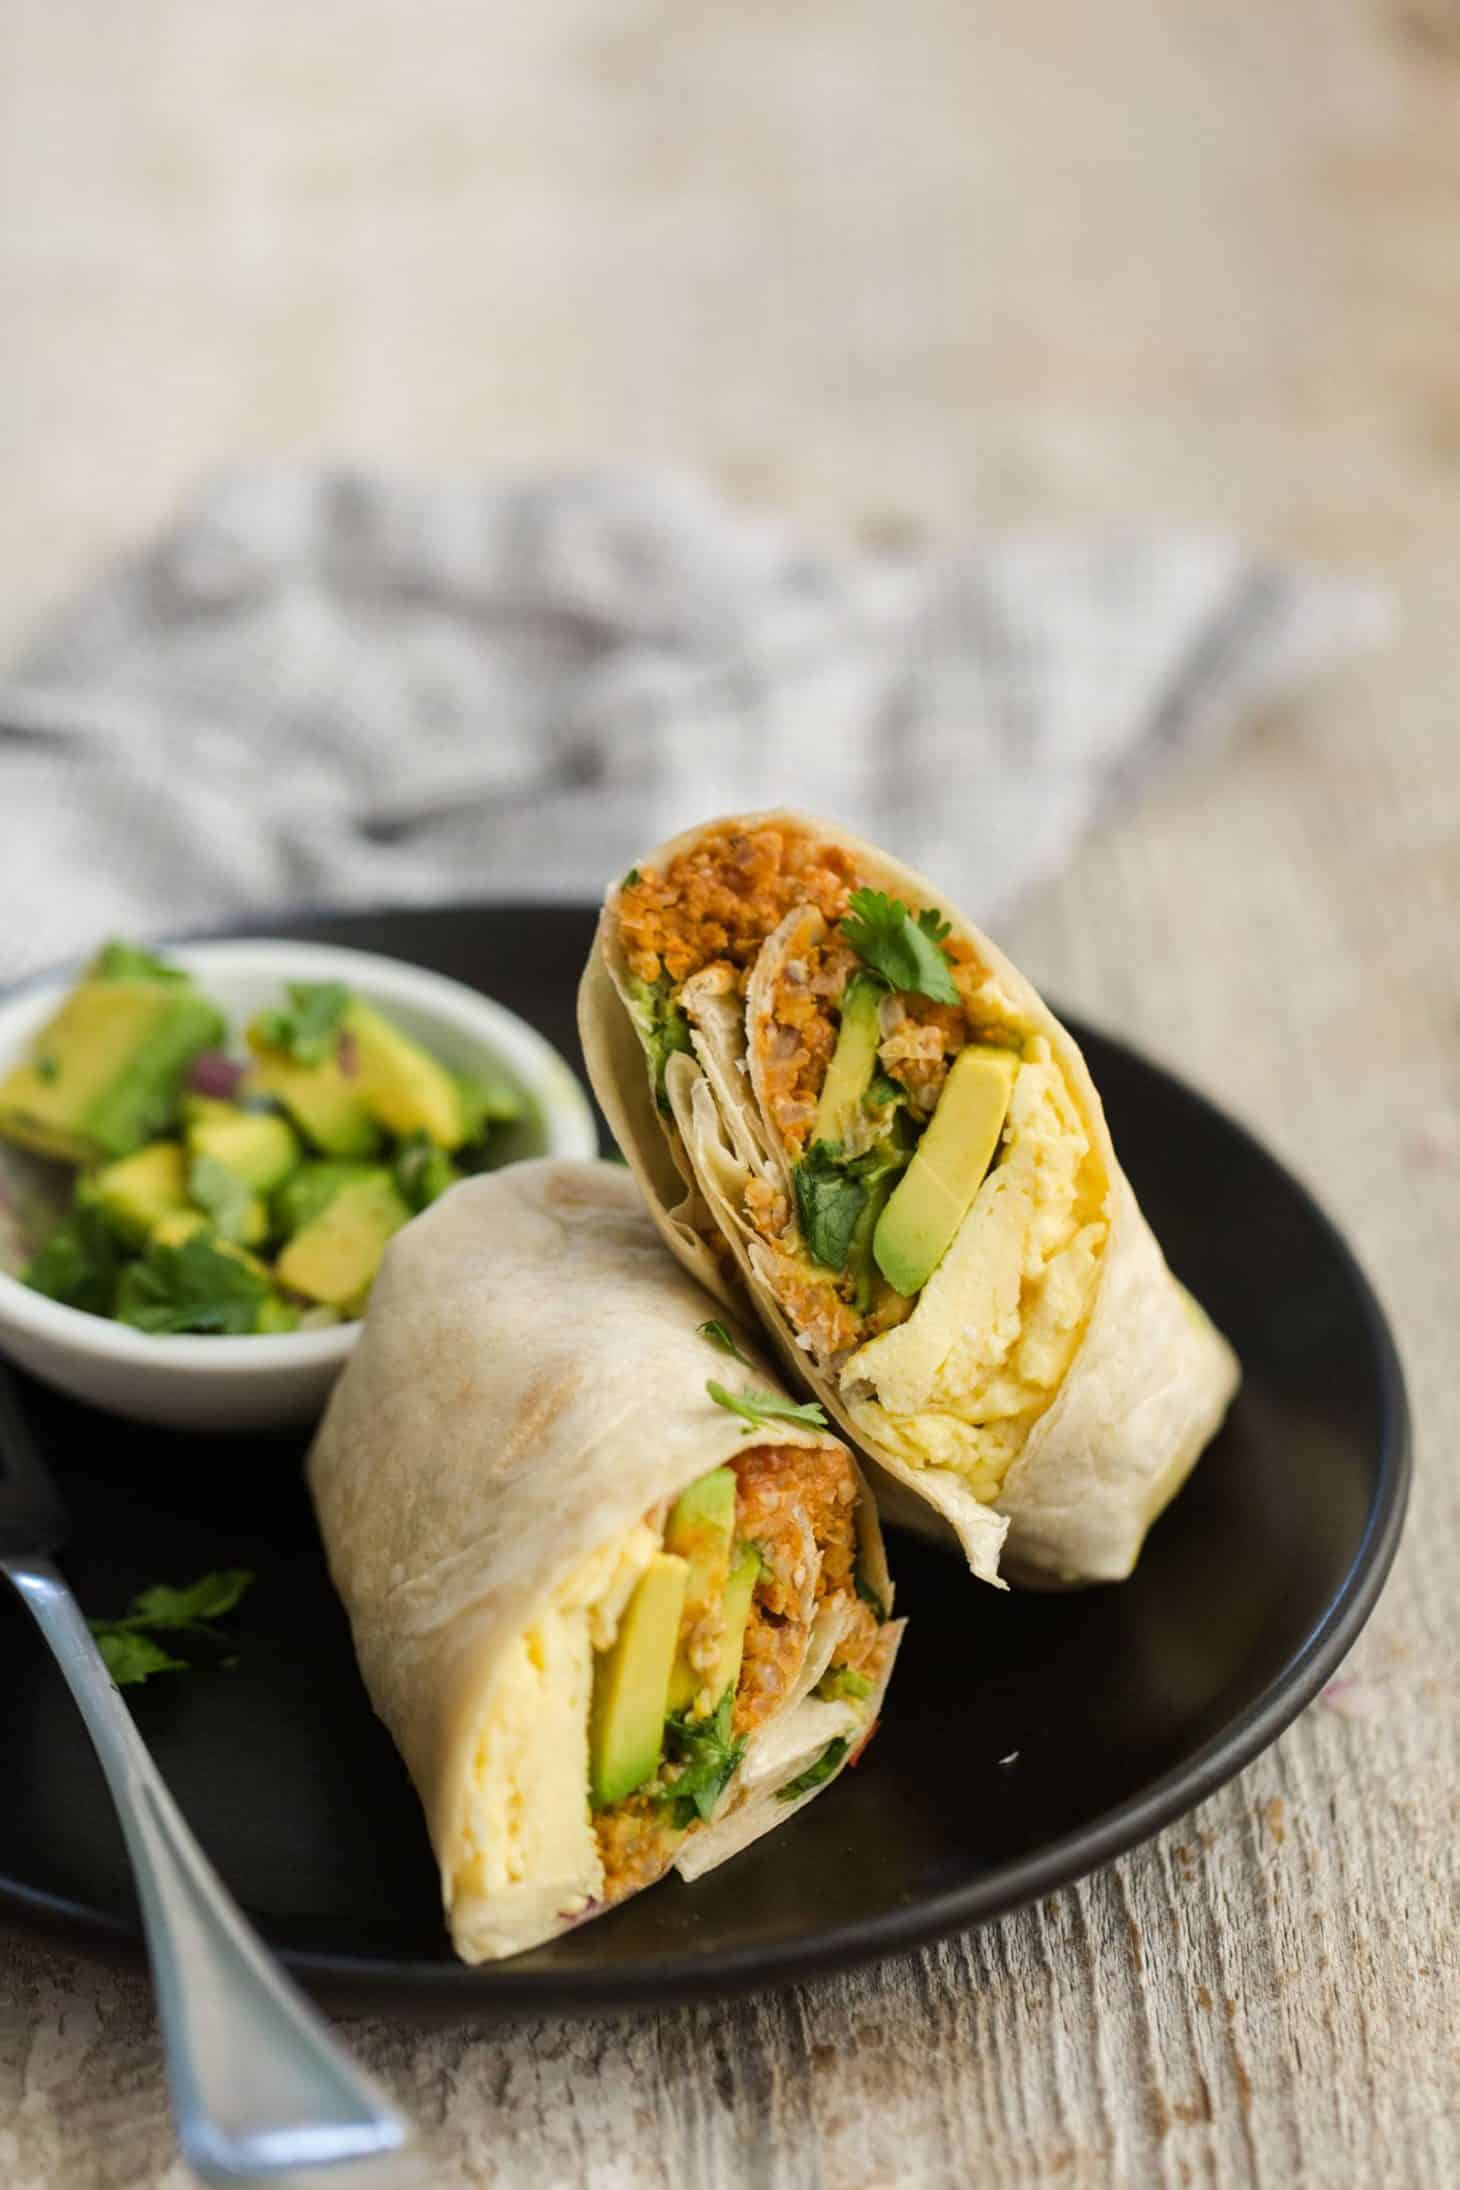 Image result for veggie breakfast burrito"